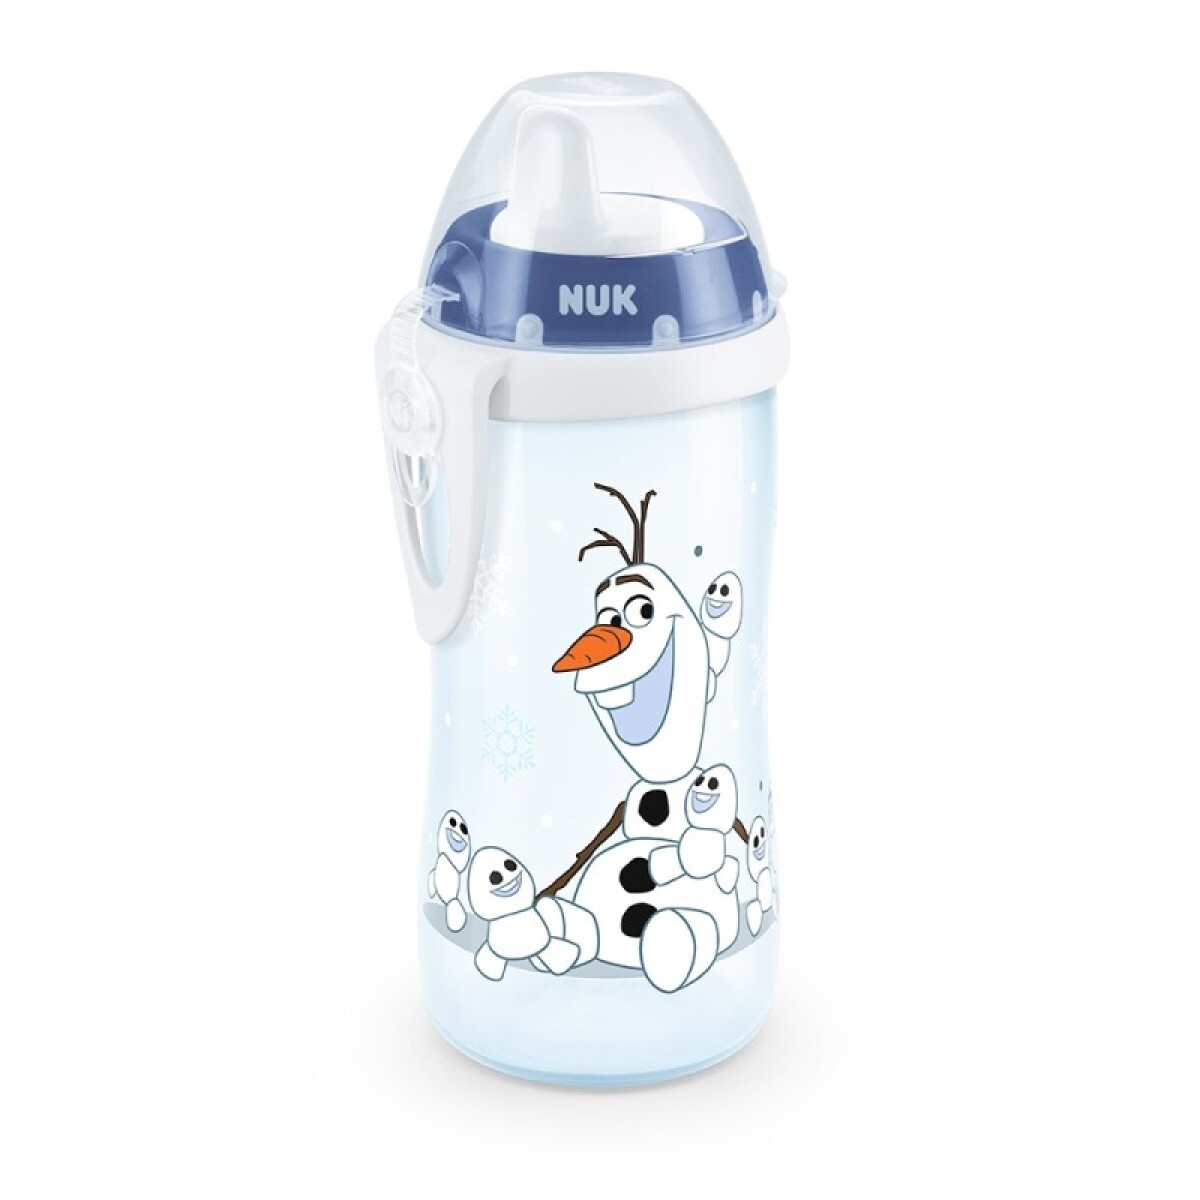 Kiddy Cup Frozen Olaf +12m 300ml - NUK 